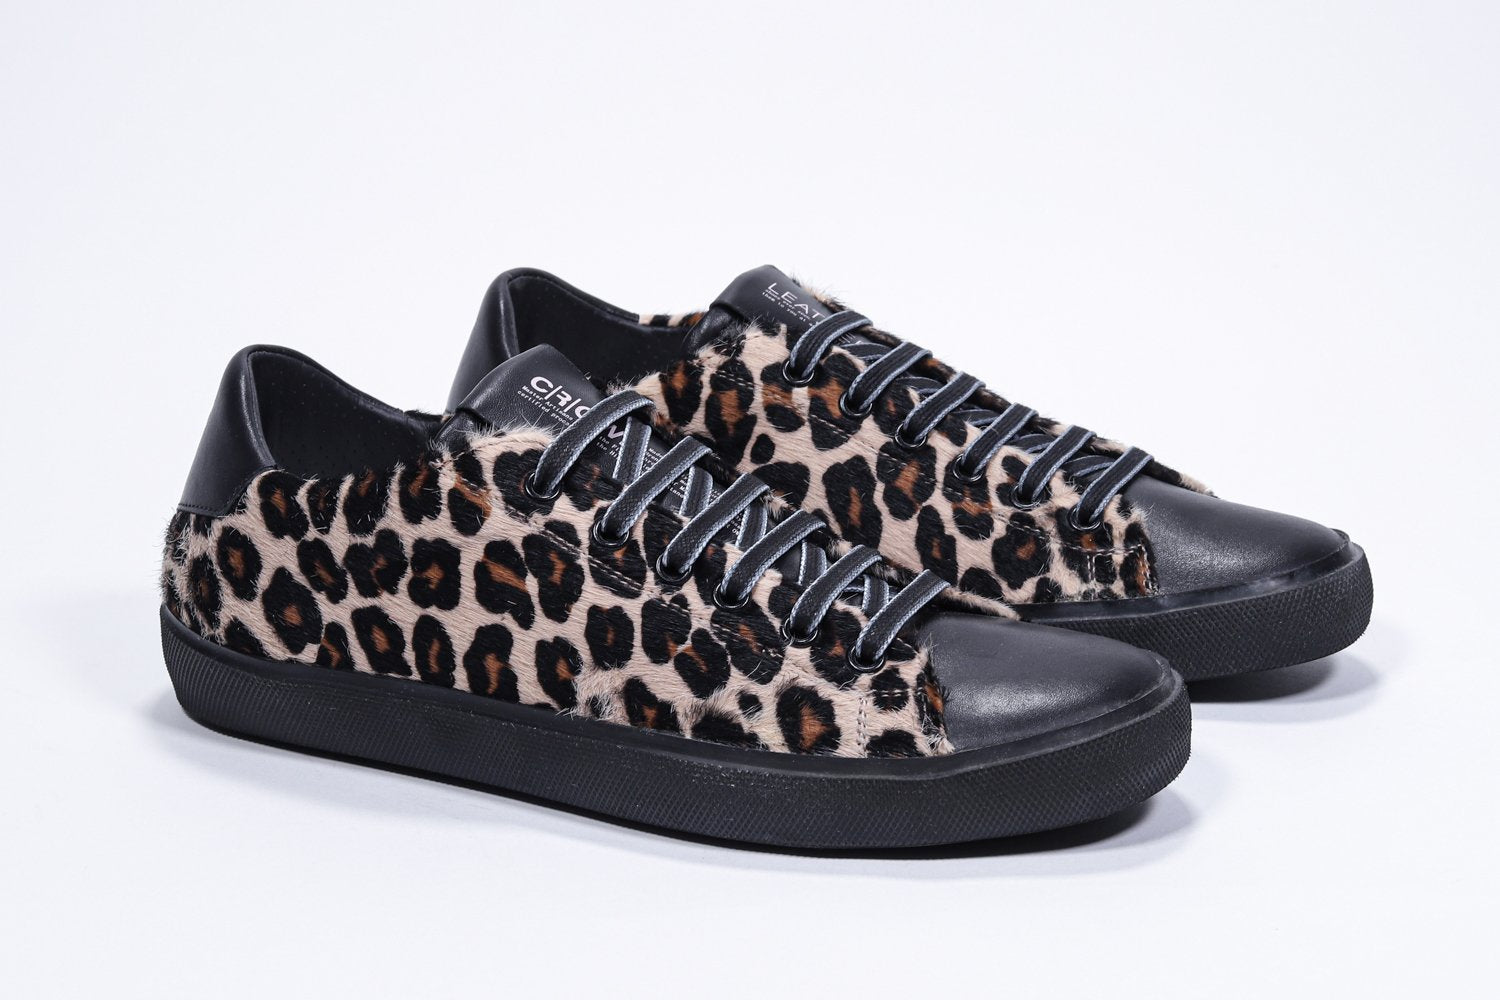 Dreiviertelansicht der Vorderseite von Low-Top-Leopardenmuster sneaker. Obermaterial aus Haarkalbsleder und schwarze Gummisohle.